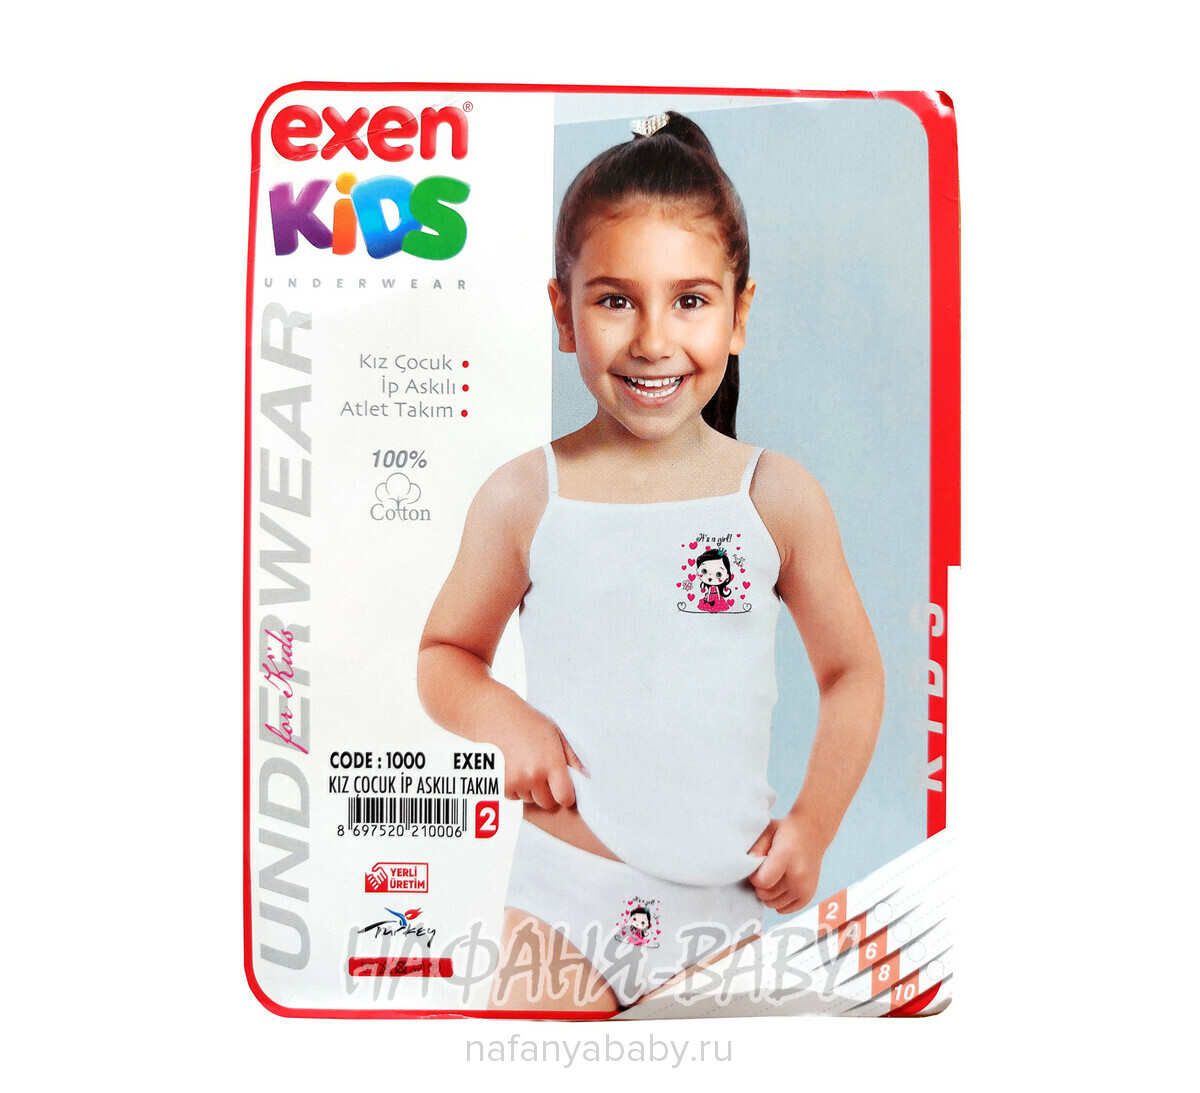 Детский комплект(майка+трусы) EXEN Kids арт: 1000-2, 1-4 года, цвет белый, оптом Турция